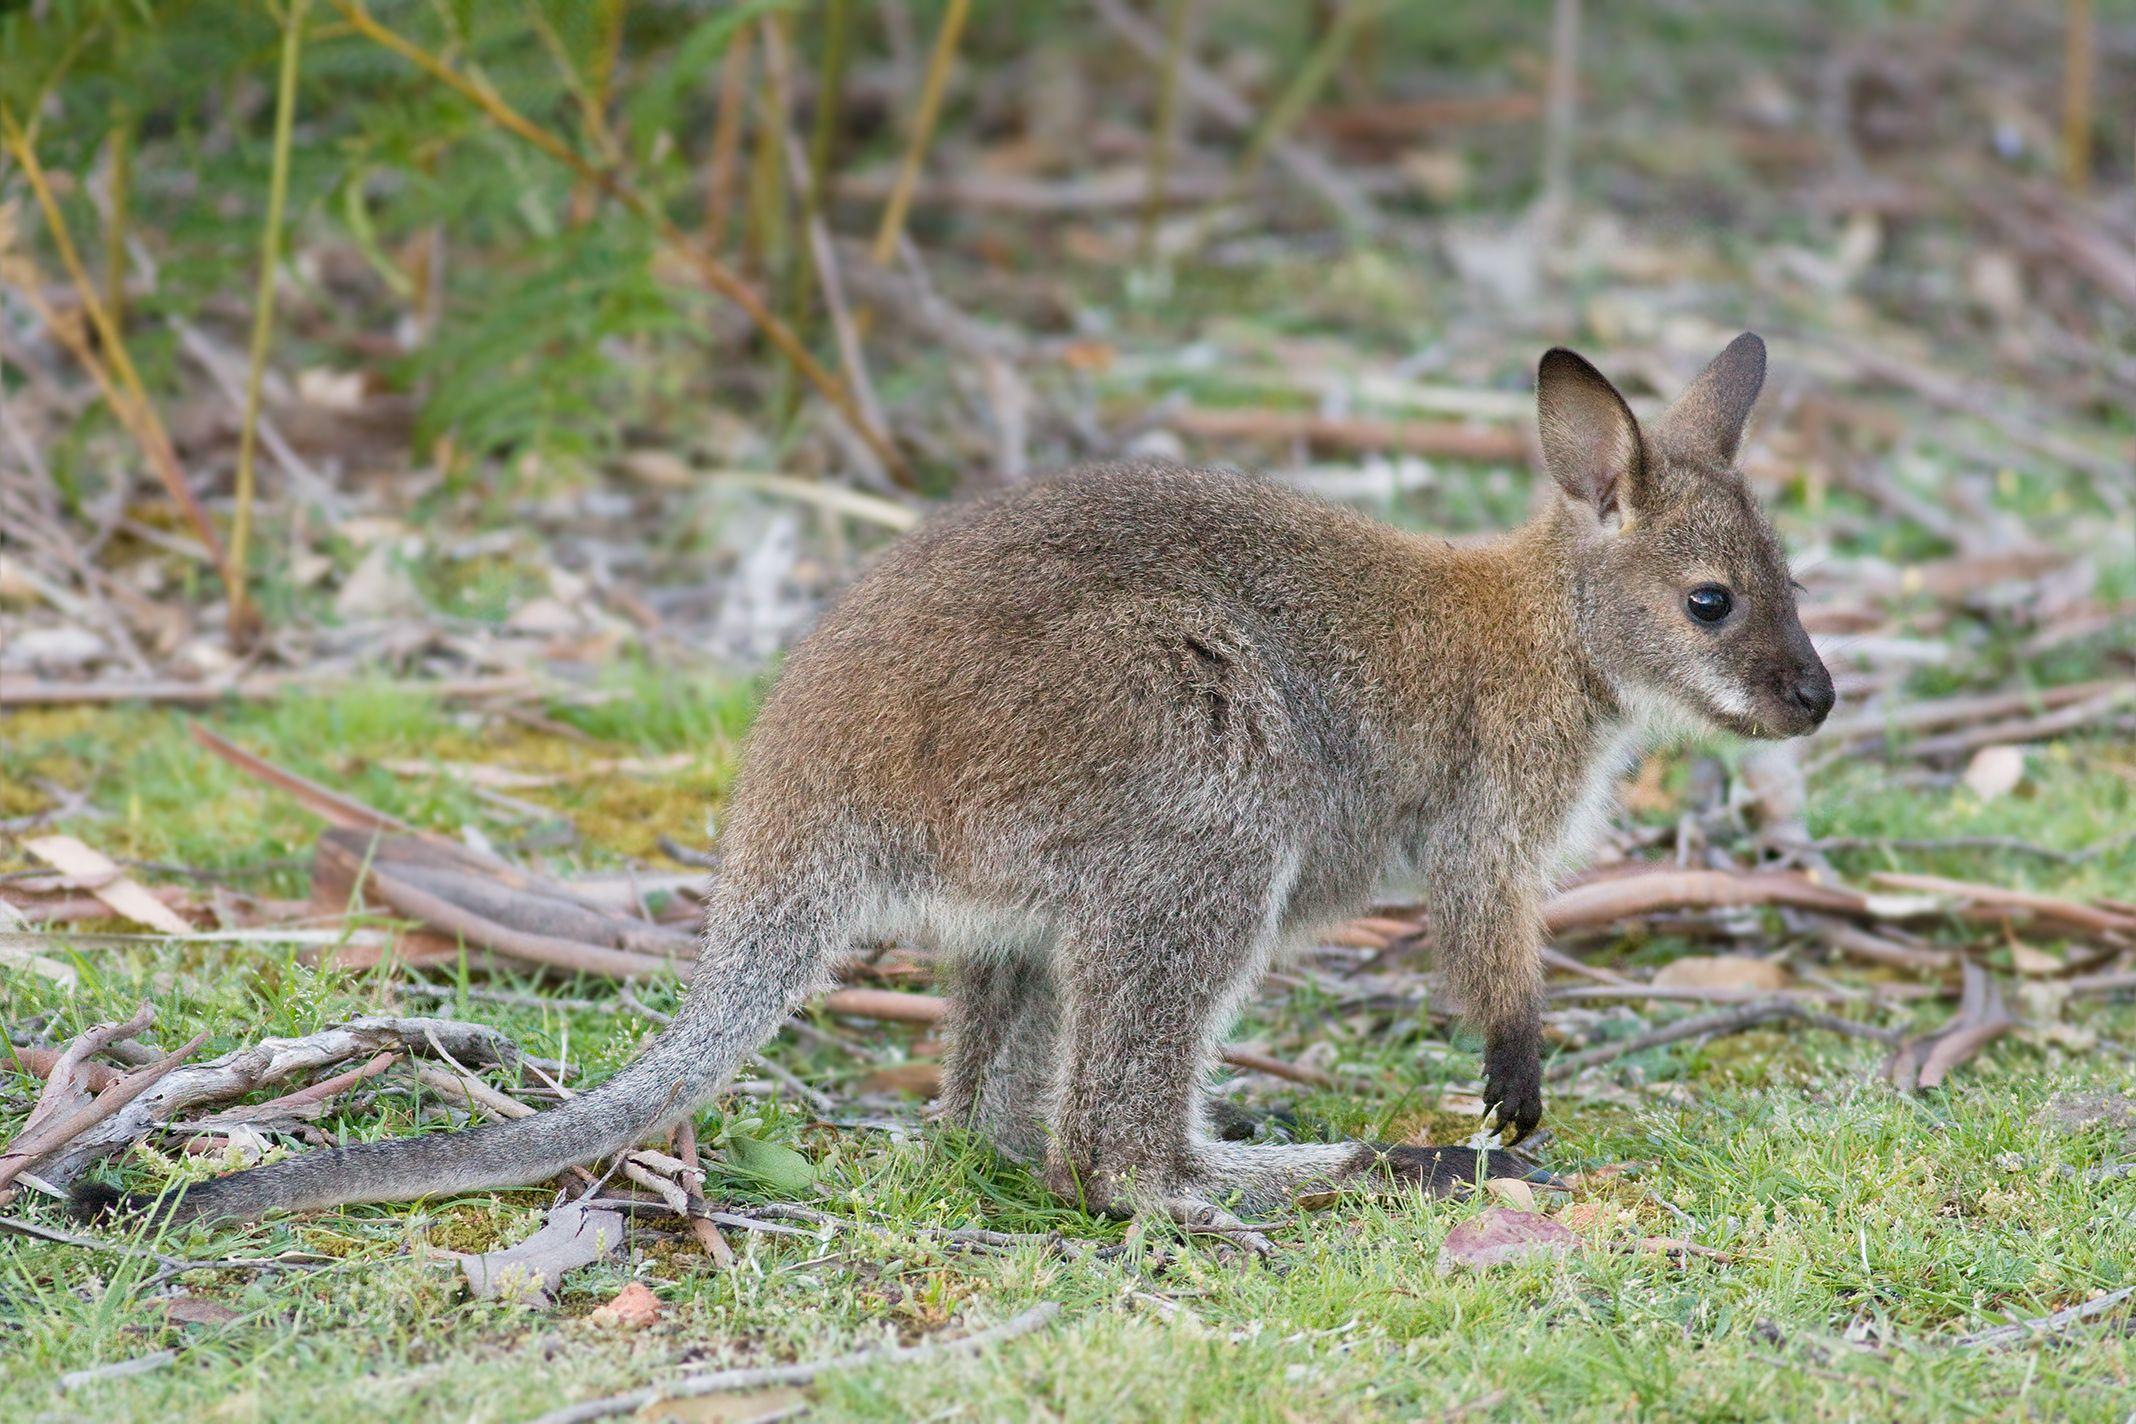 Fauna of Australia